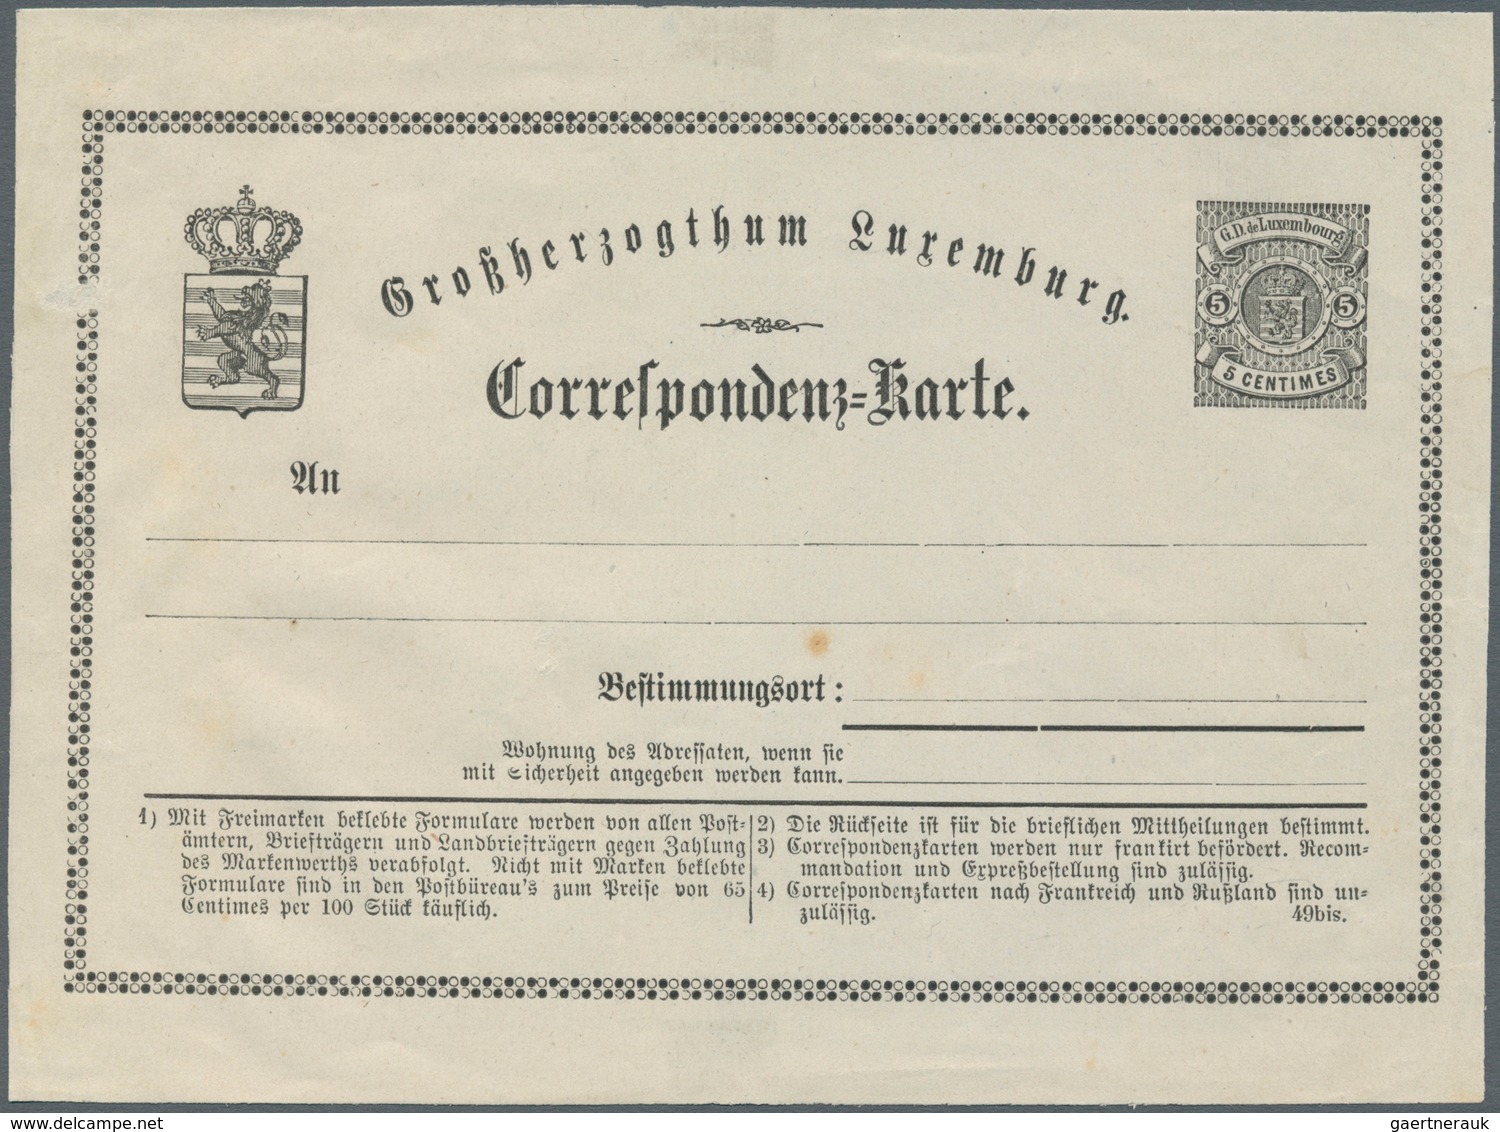 15146 Luxemburg - Ganzsachen: 1875, Essay Card 5 C. Black In German Language On Thin White Paper, Slight T - Entiers Postaux